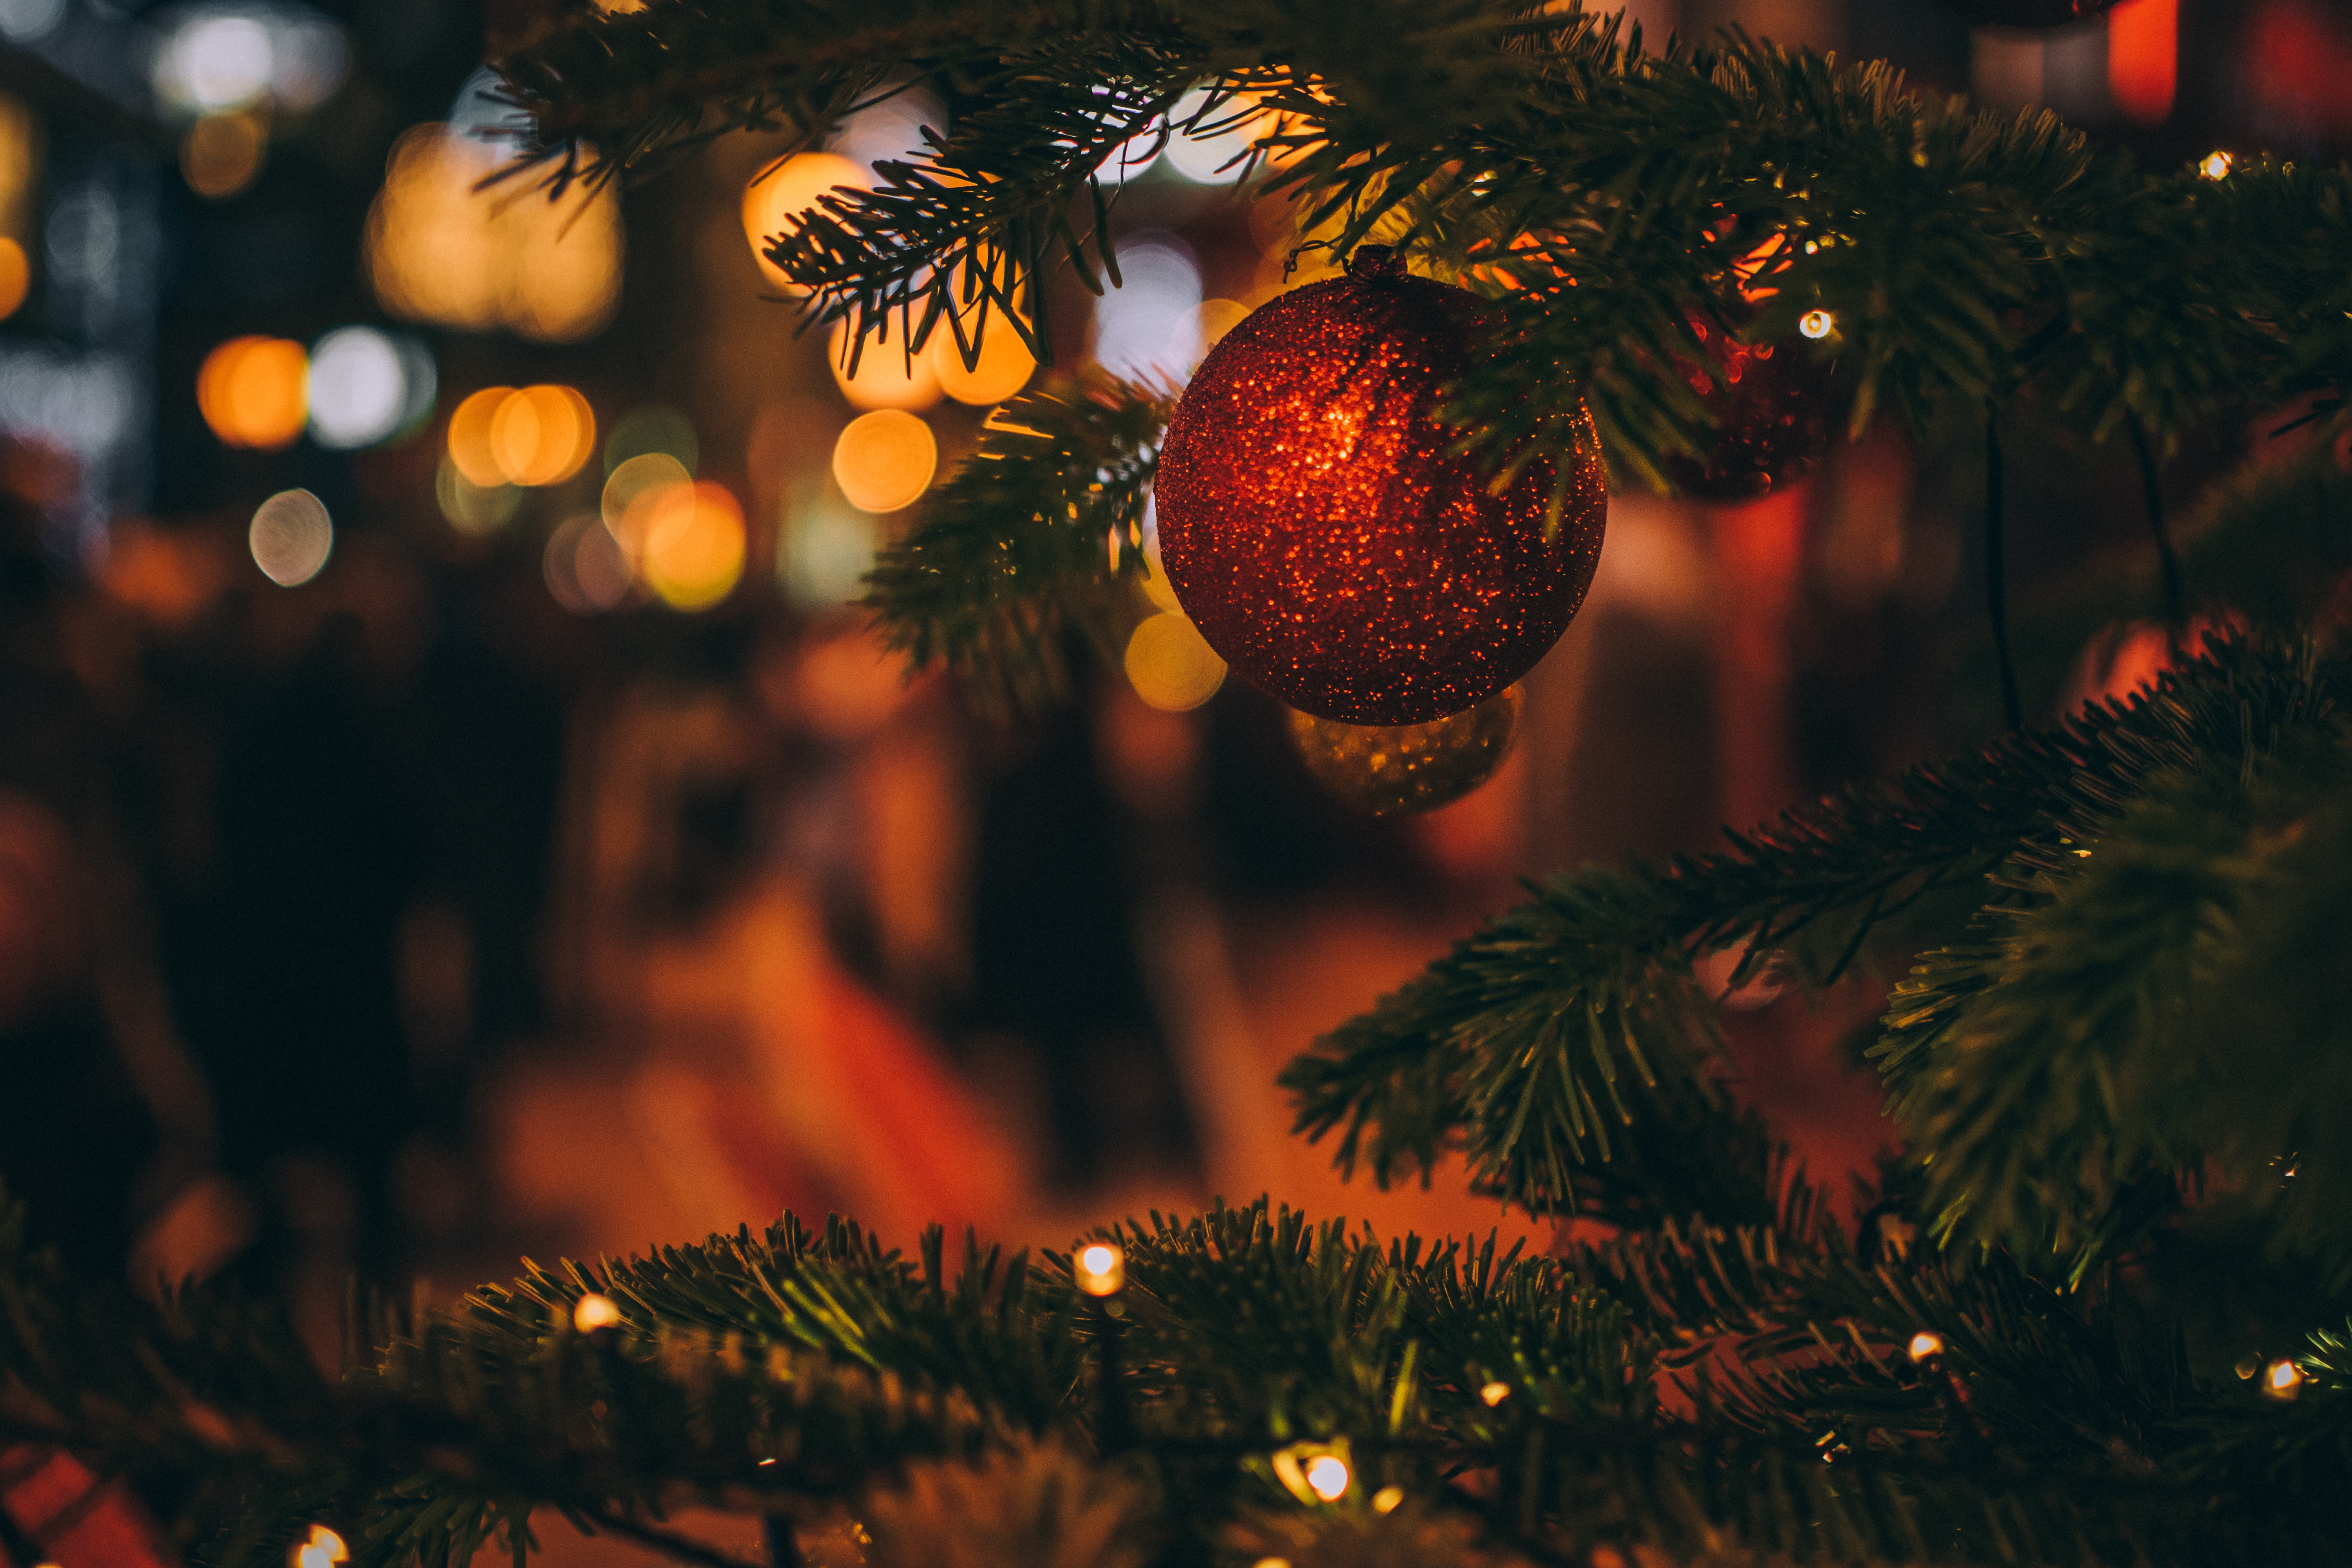 Những đồ trang trí Noel sẽ khiến cho căn nhà của bạn trở nên sống động và ấm áp hơn trong mùa lễ hội năm nay. Hãy cùng chiêm ngưỡng những hình ảnh tuyệt đẹp về các mẫu đồ trang trí Noel chỉ trong vài giây.